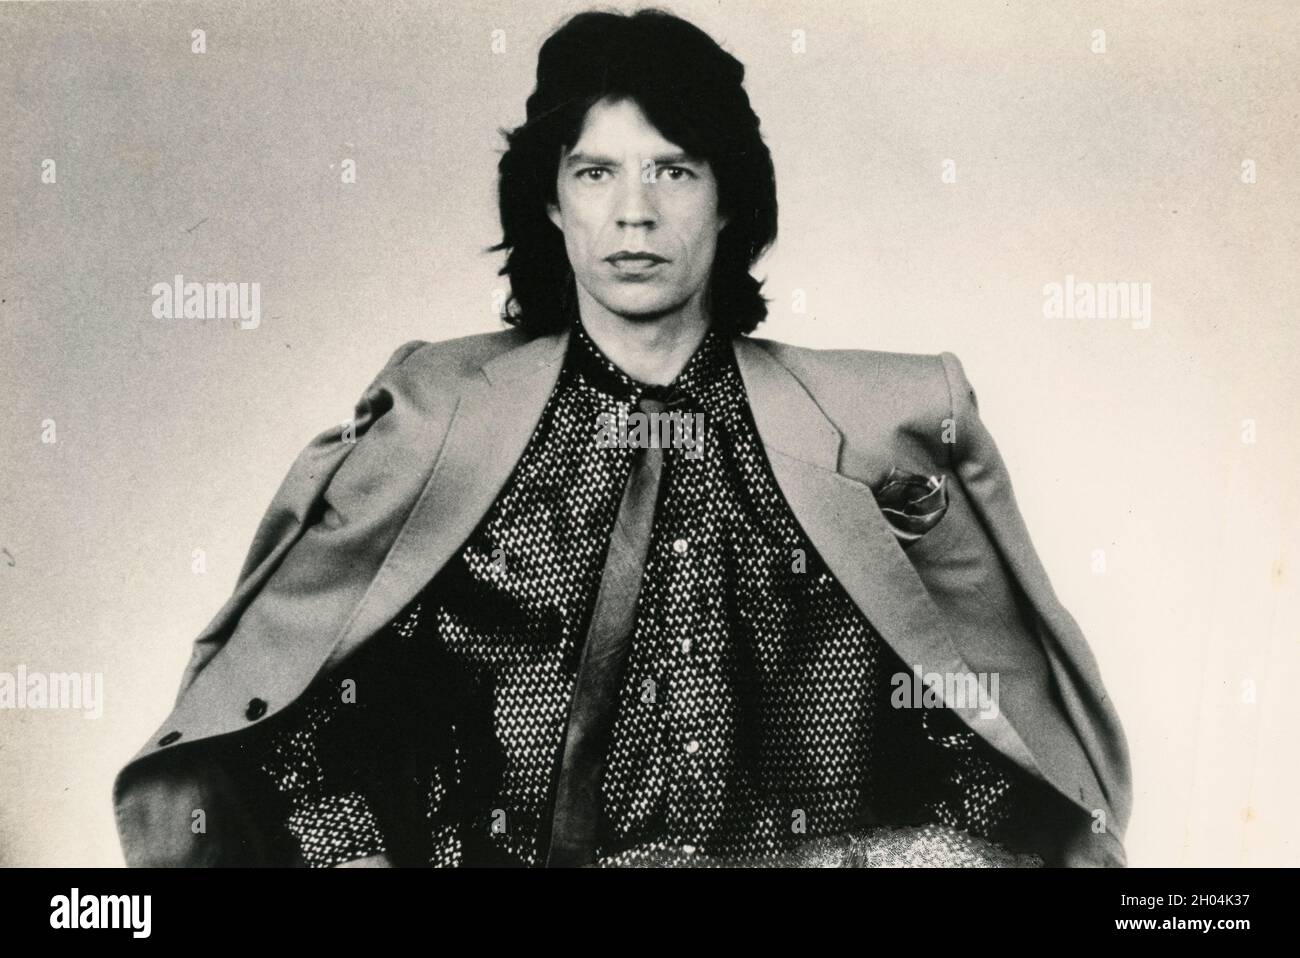 Mick Jagger, englischer Sänger und Songwriter, 1980er Jahre Stockfoto